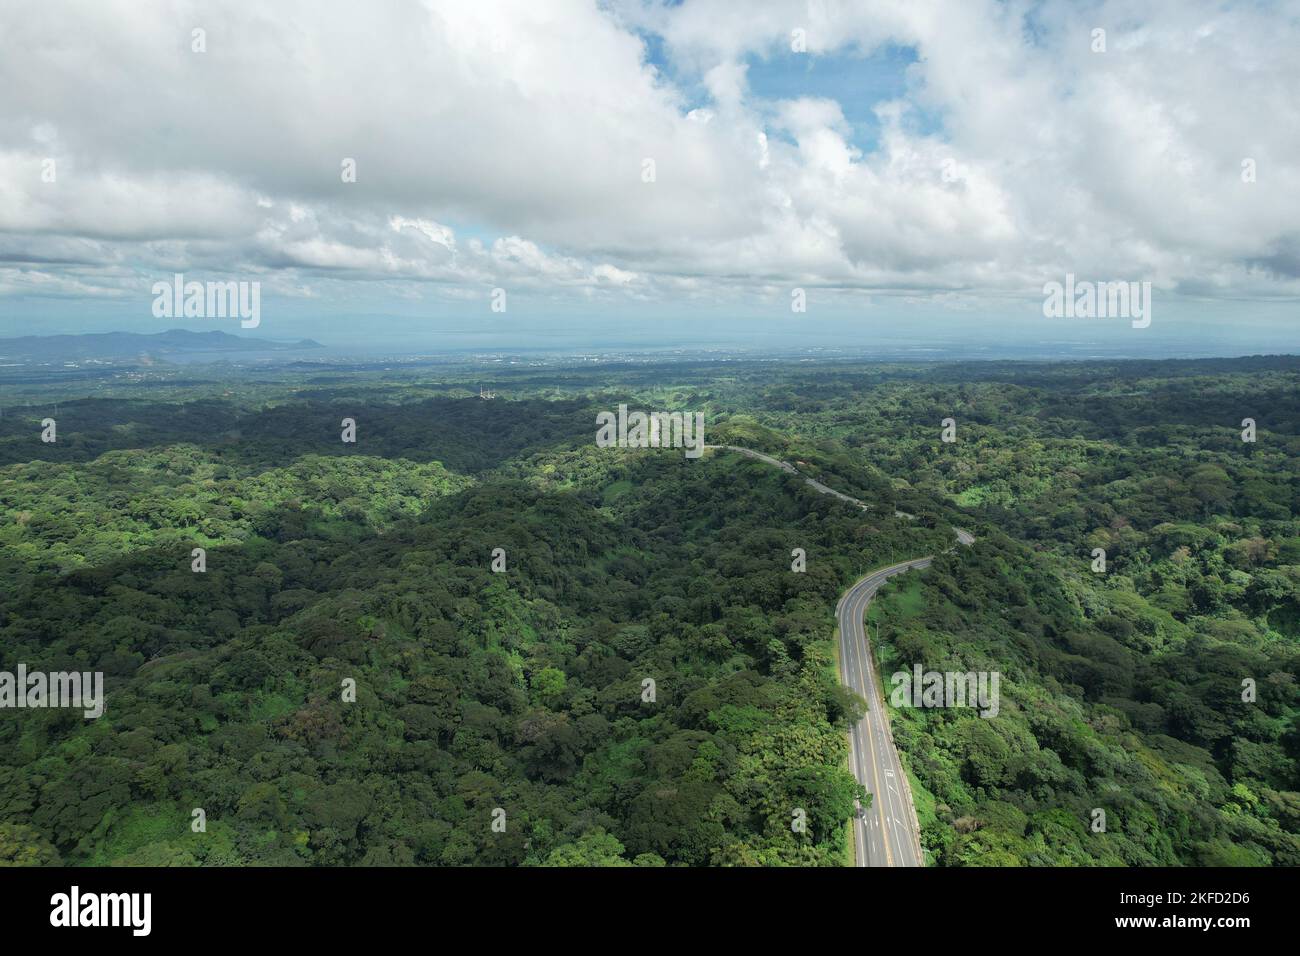 Reisen Sie zum Thema mittelamerika. Straße in grünen Dschungel Landschaft Luftdrohne Ansicht Stockfoto